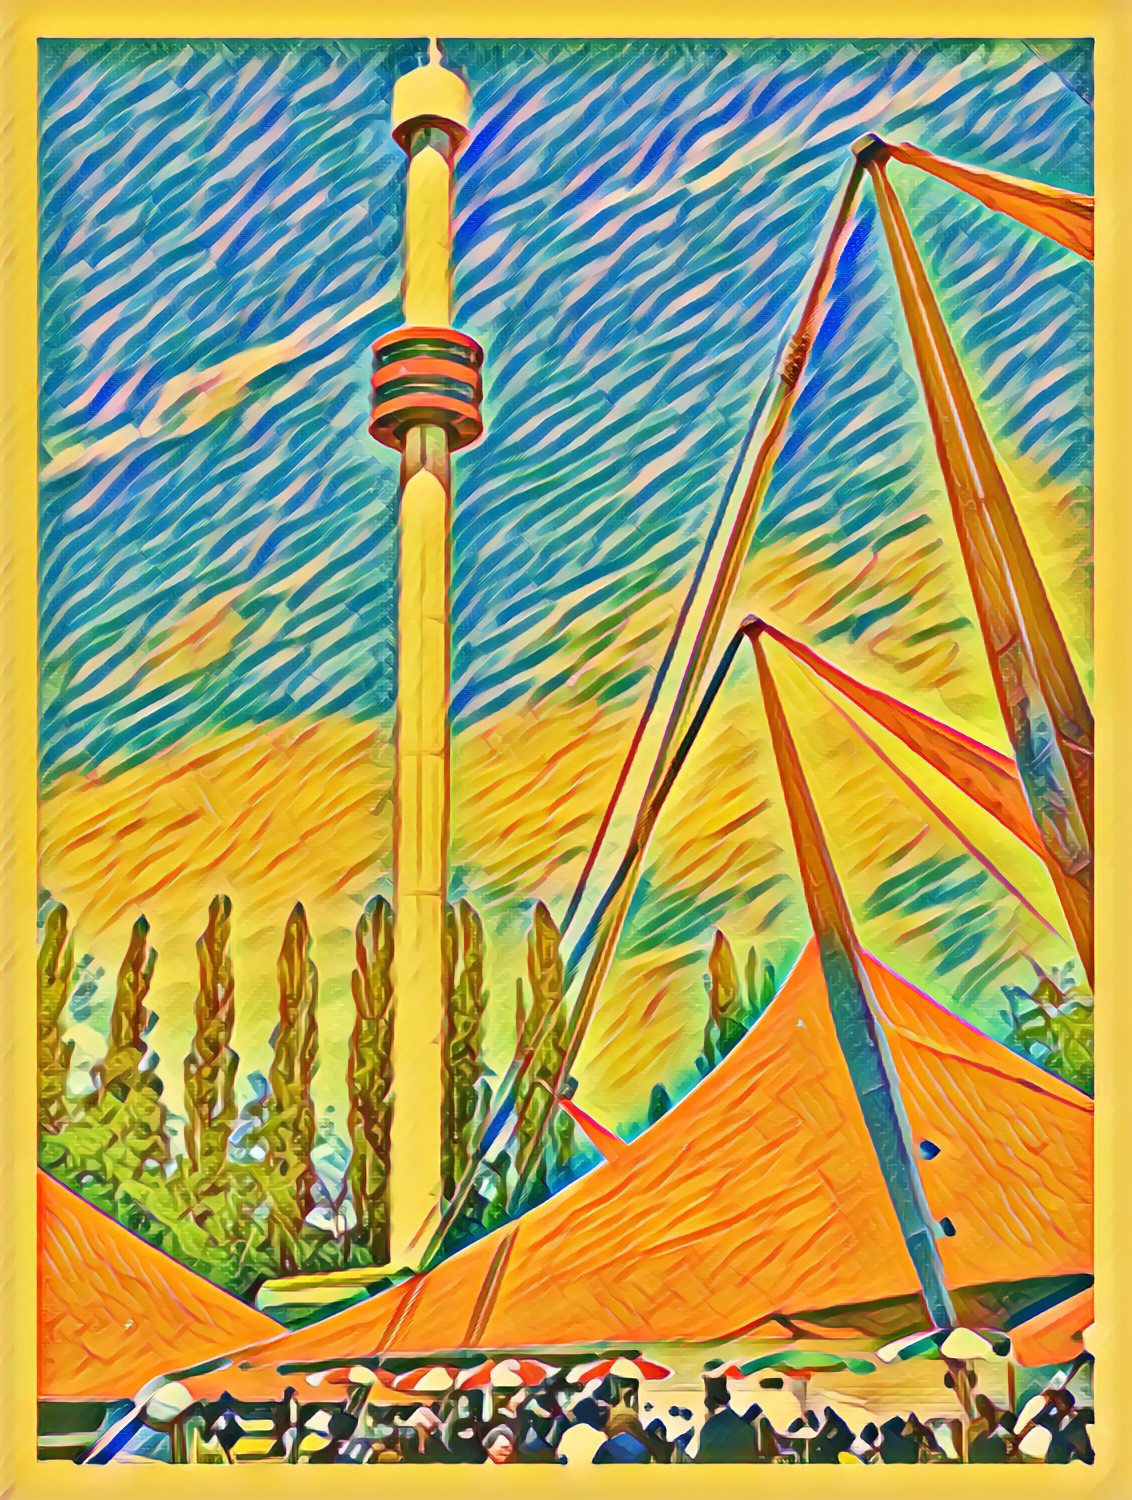 Tower of La Ronde, Expo 67 (Montreal) / Essay No.4